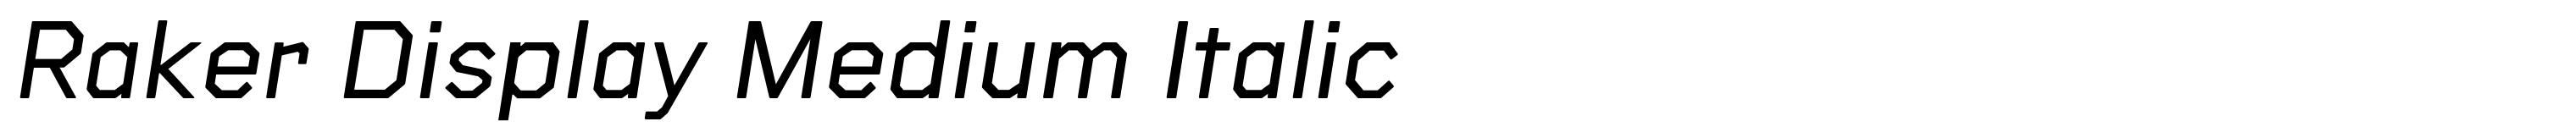 Raker Display Medium Italic